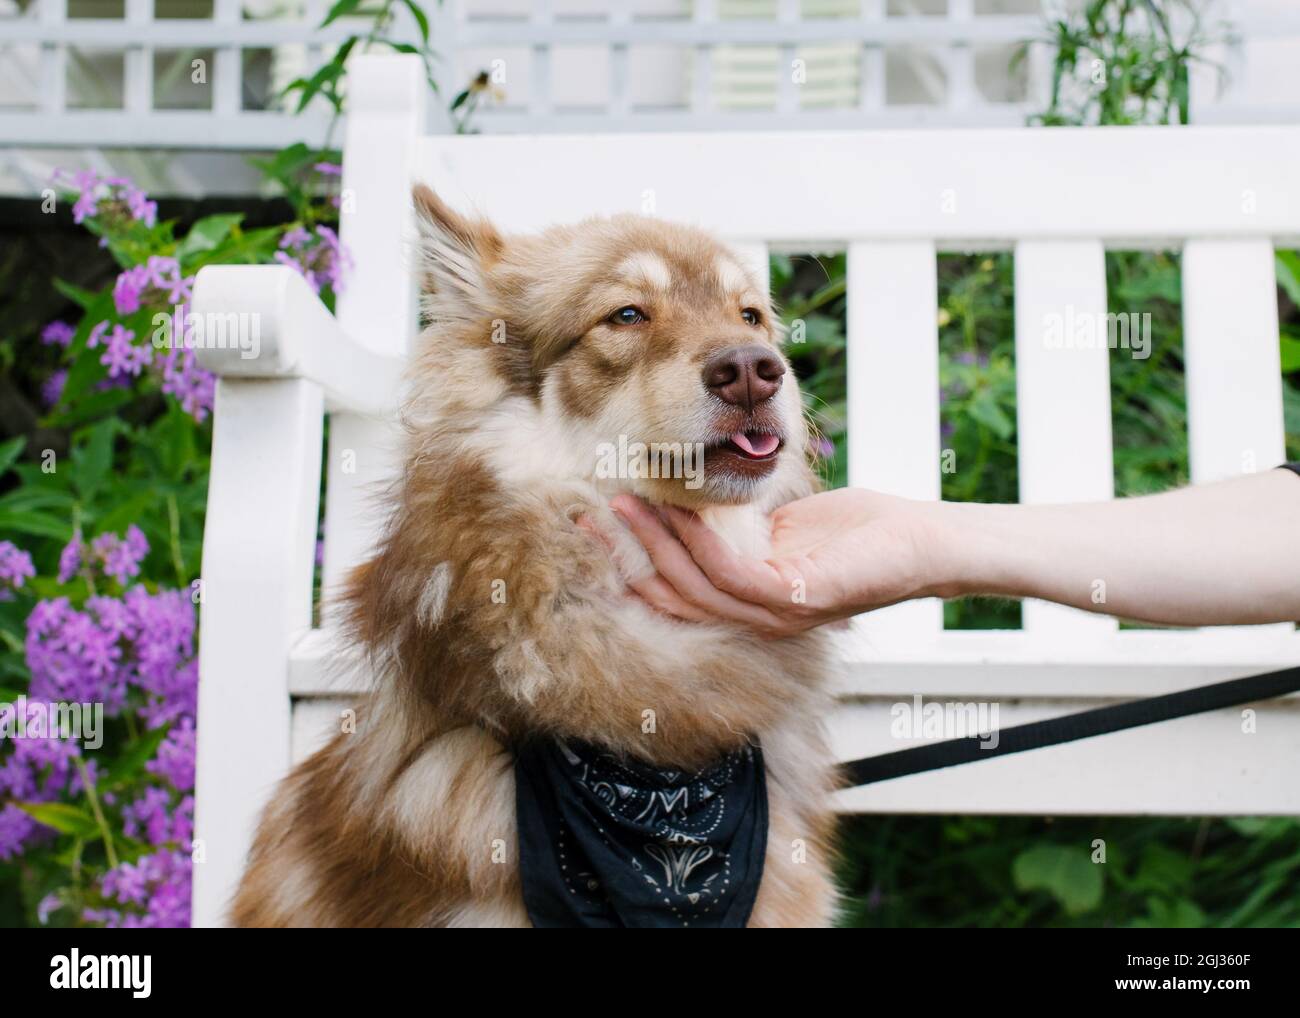 Person mit Hund, die Hand unter das Kinn des Hundes hält. Hund rollt mit der Zunge und sitzt vor einer weißen Gartenbank. Lila Blüten im Hintergrund. Stockfoto